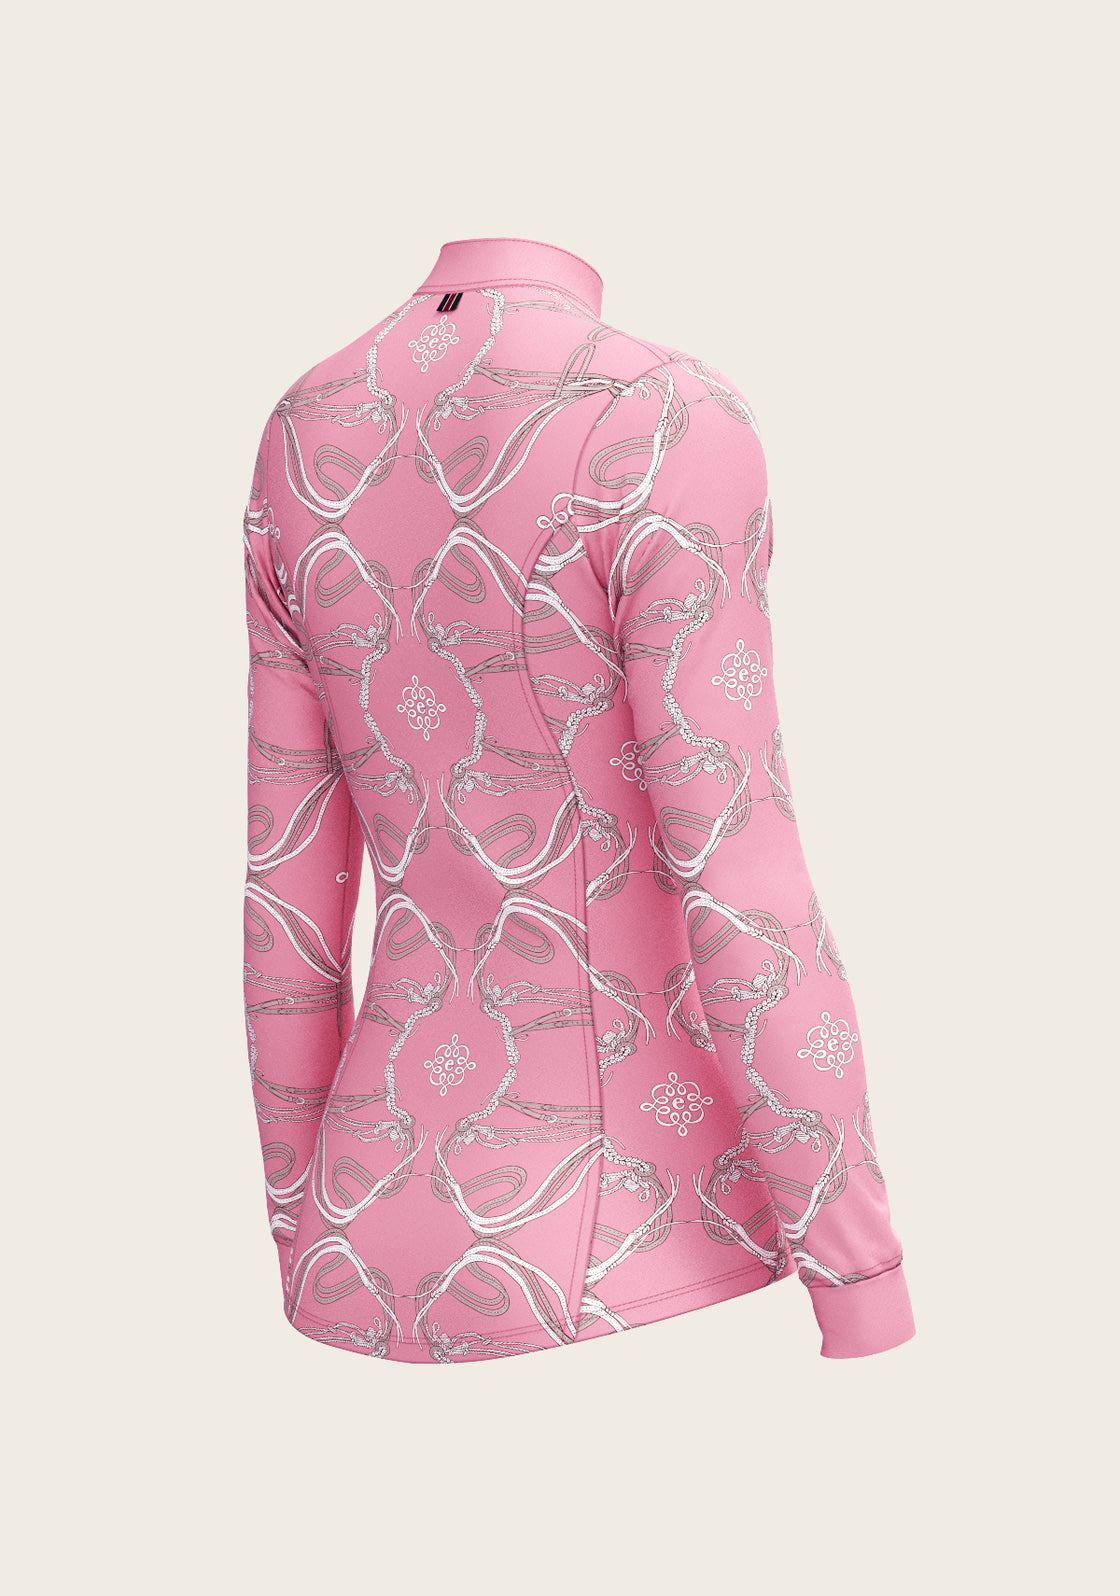 Roped Bridles on Pink Quarter Zip Sun Shirt